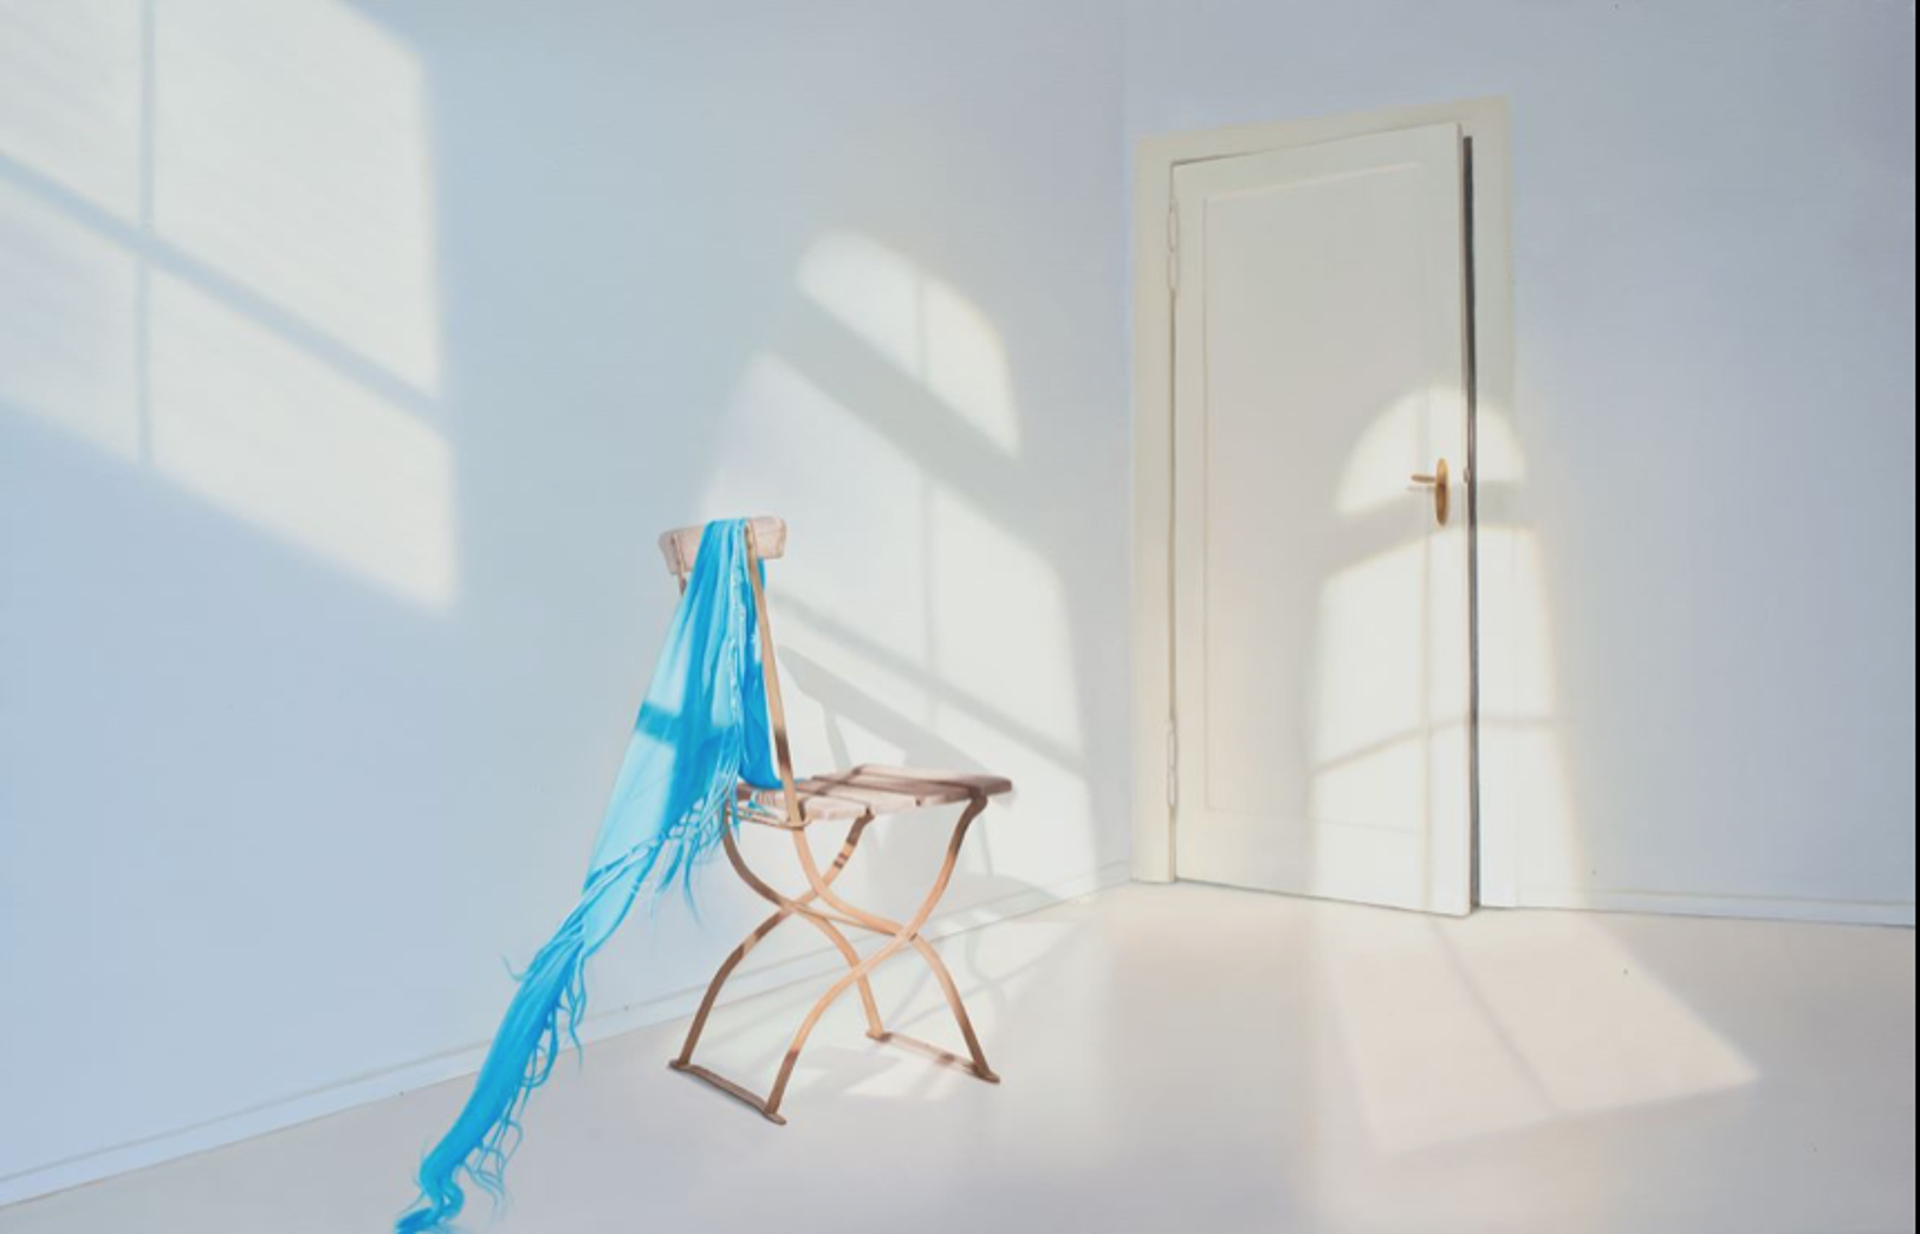 Zimmer mit blauem Tuch by Edite Grinberga